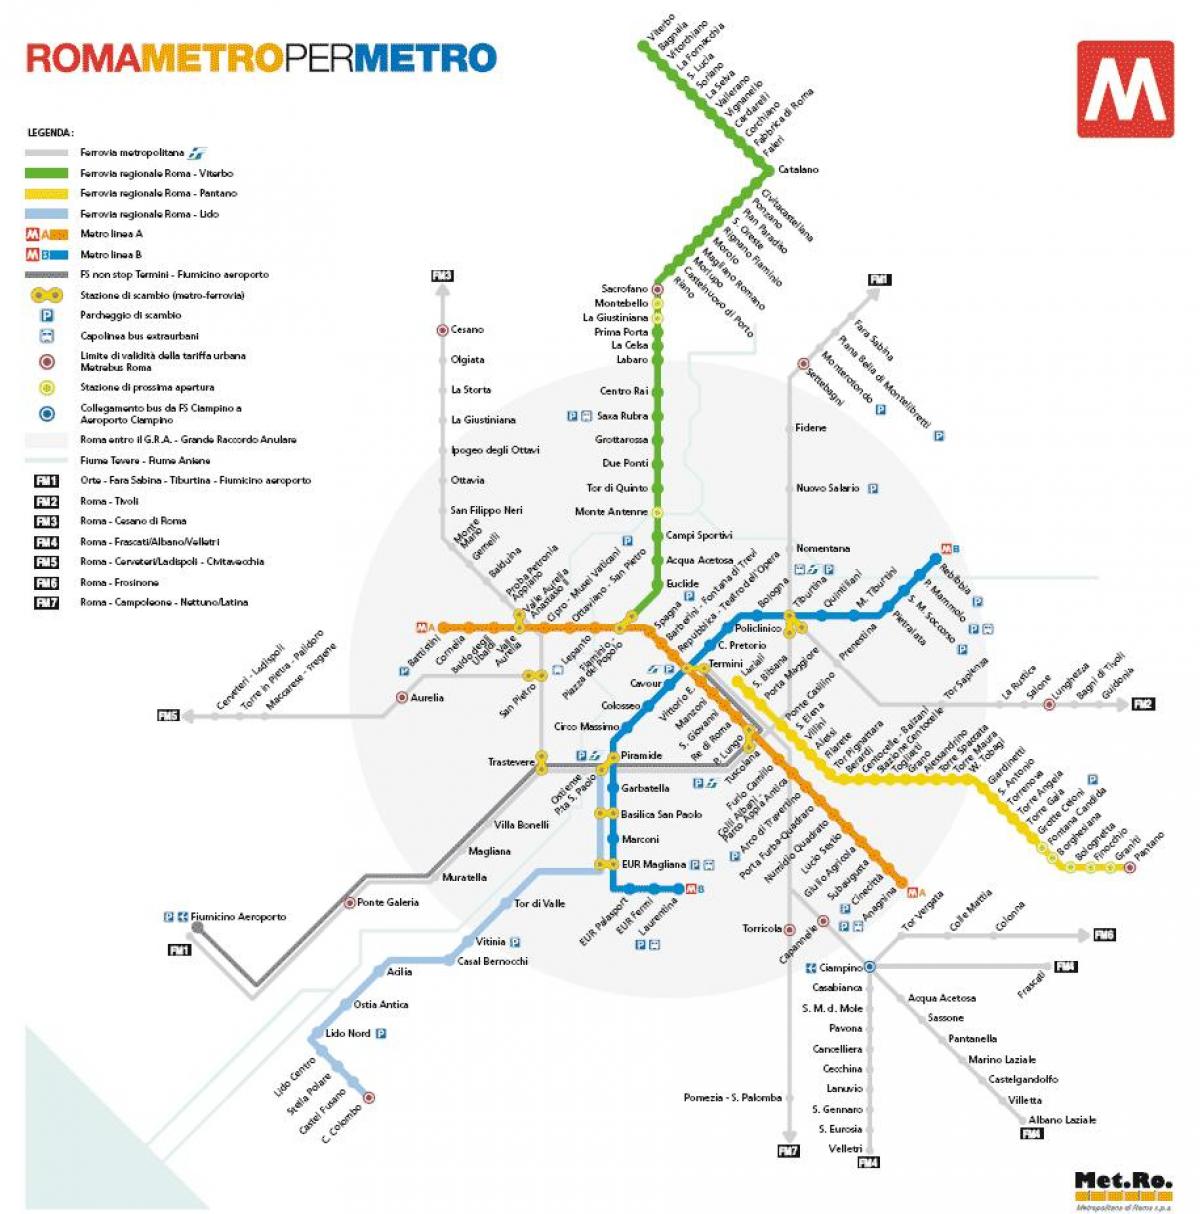 Roma mapa del metro de 2016